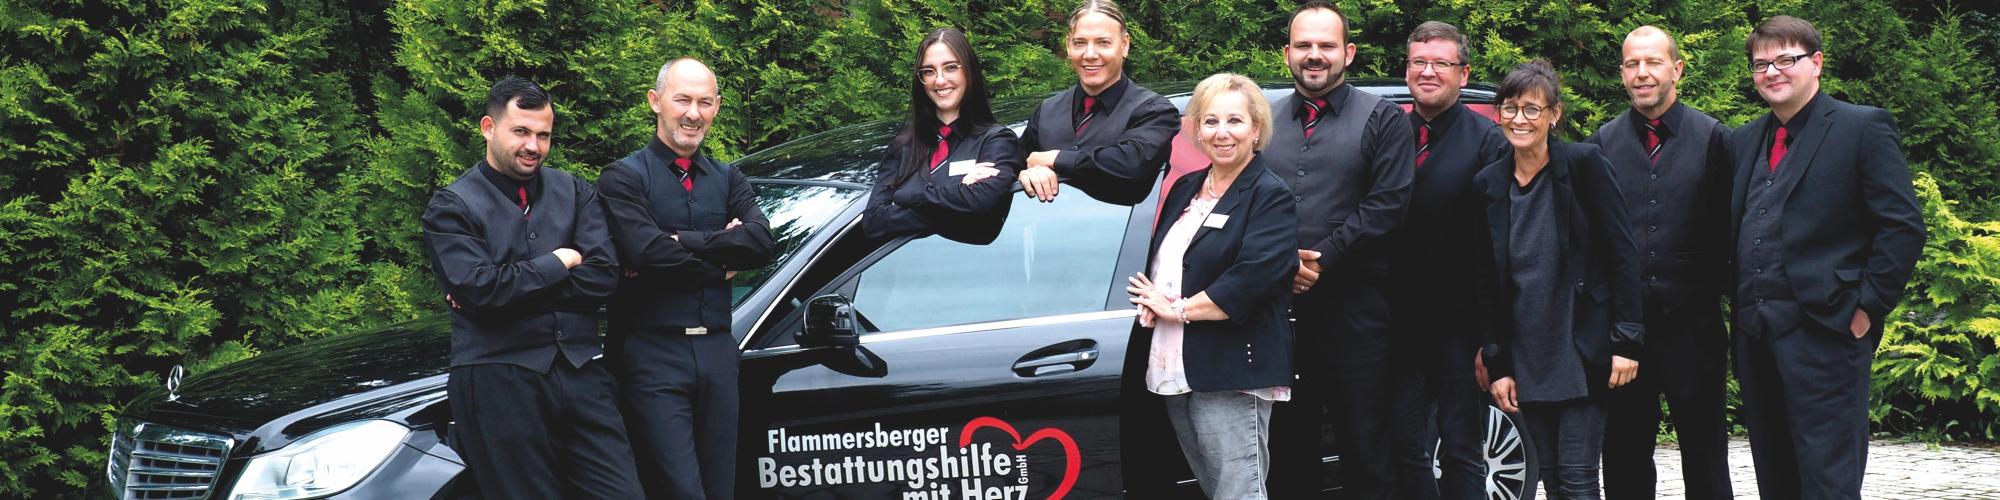 Flammersberger Bestattungshilfe mit Herz GmbH